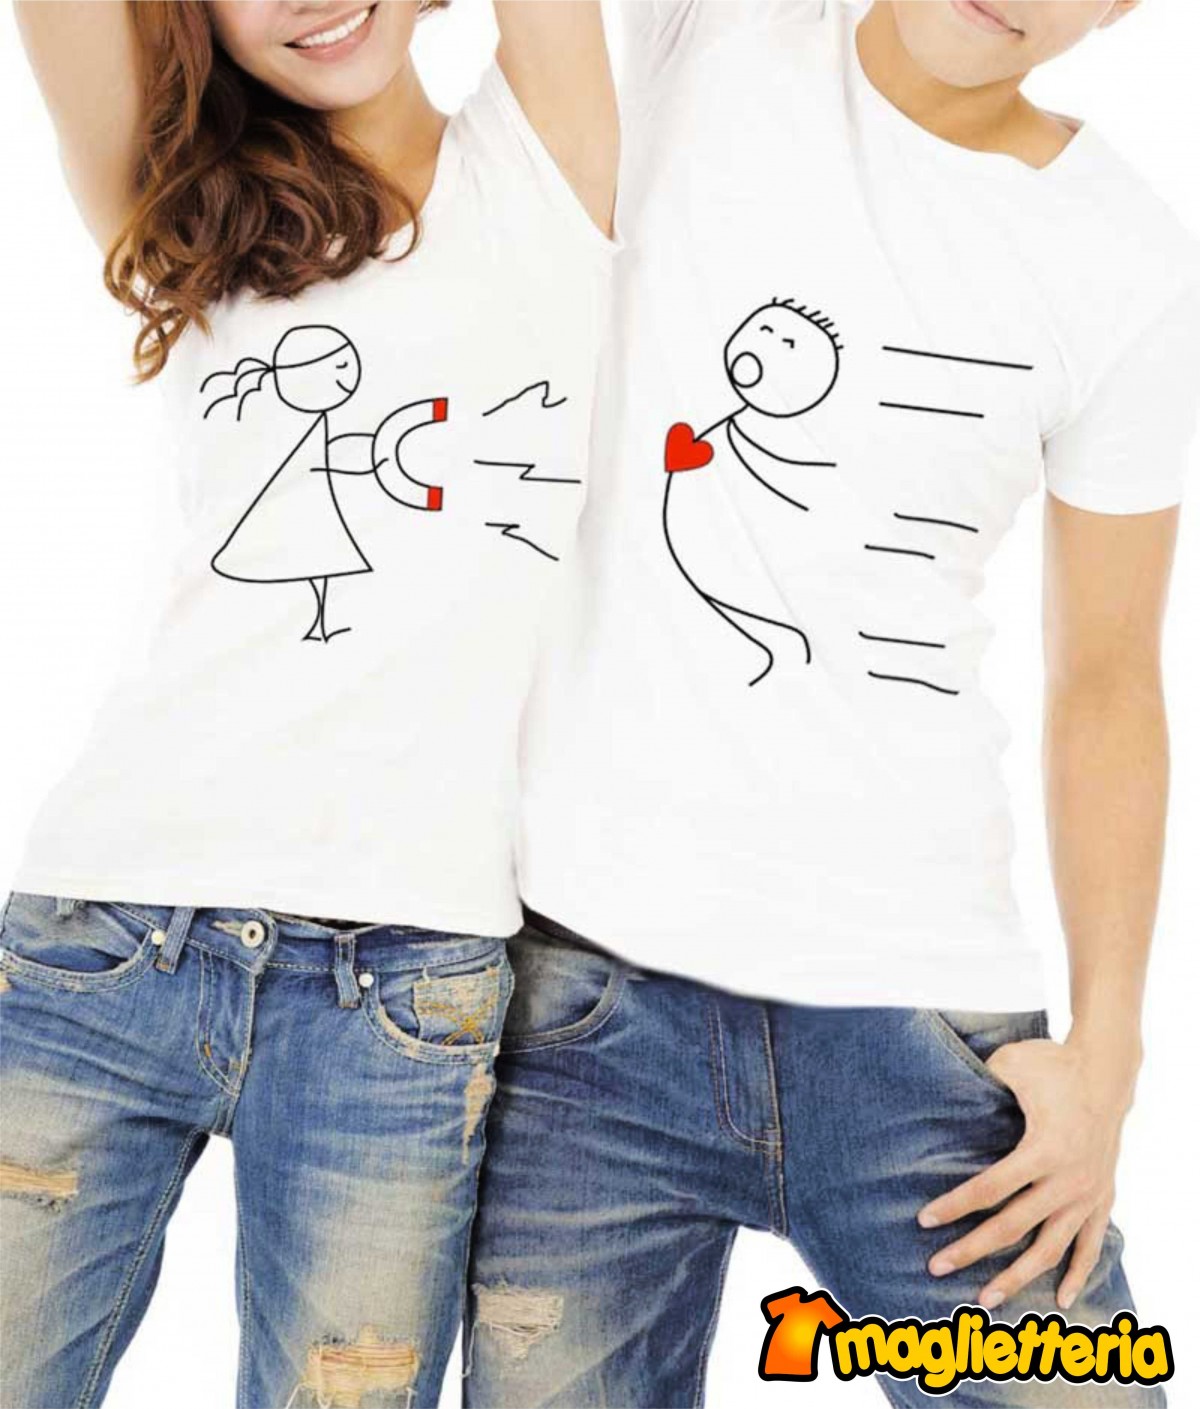 San Valentino GL64000 re e regina, Abbigliamento personalizzato. Stampa  magliette Napoli.